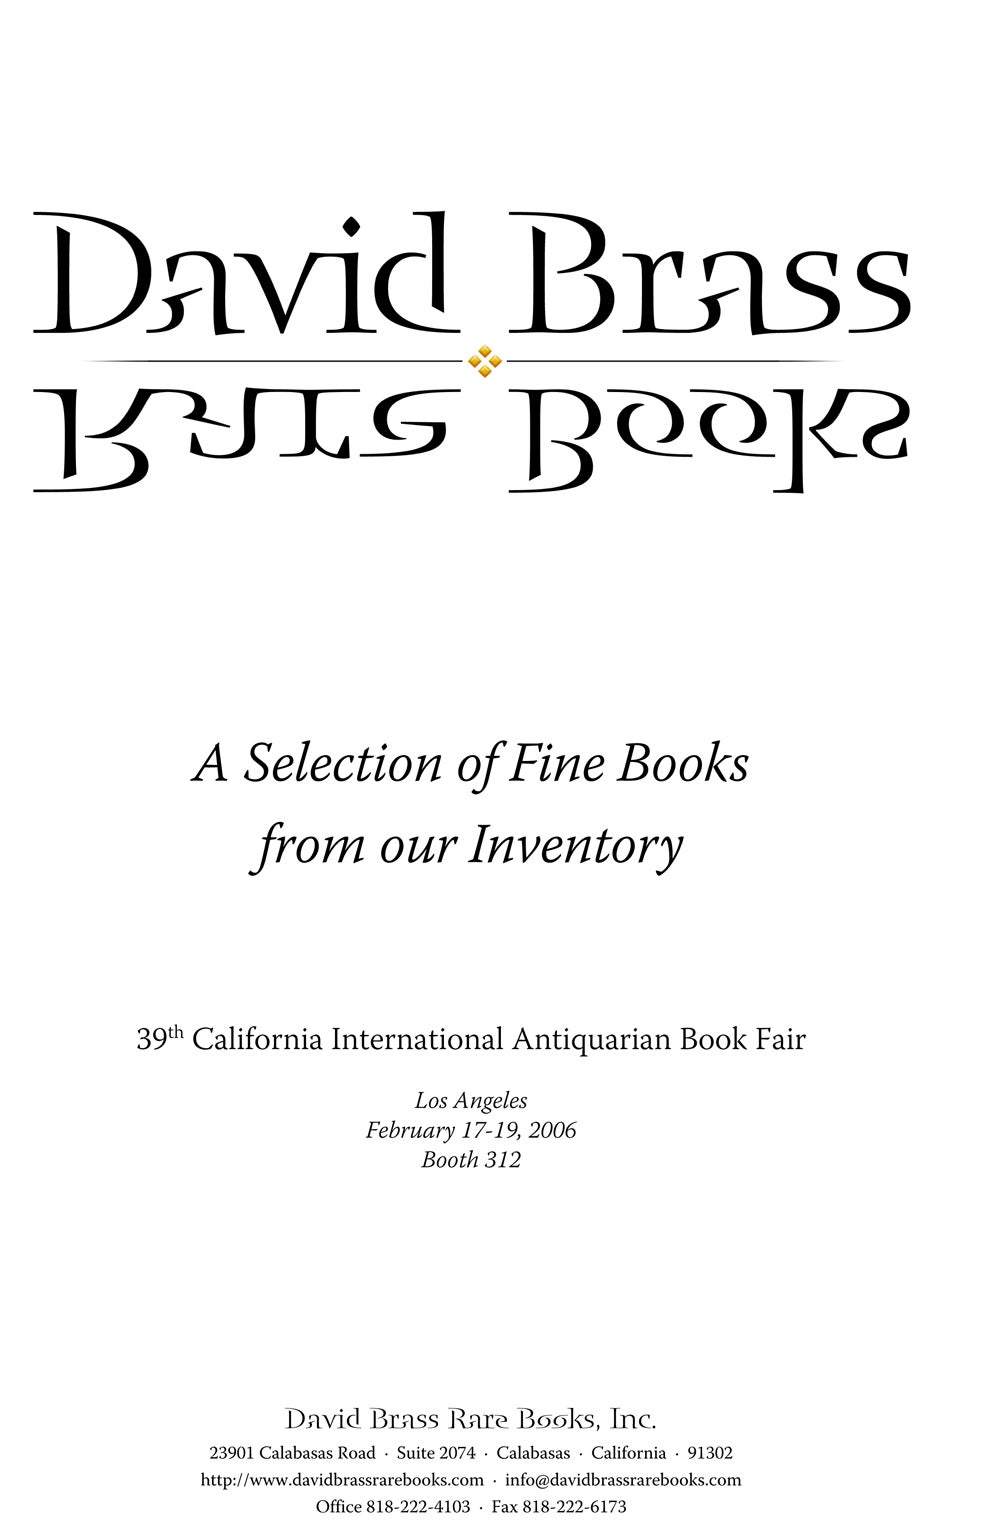 2006 The 39th California International Antiquarian Book Fair